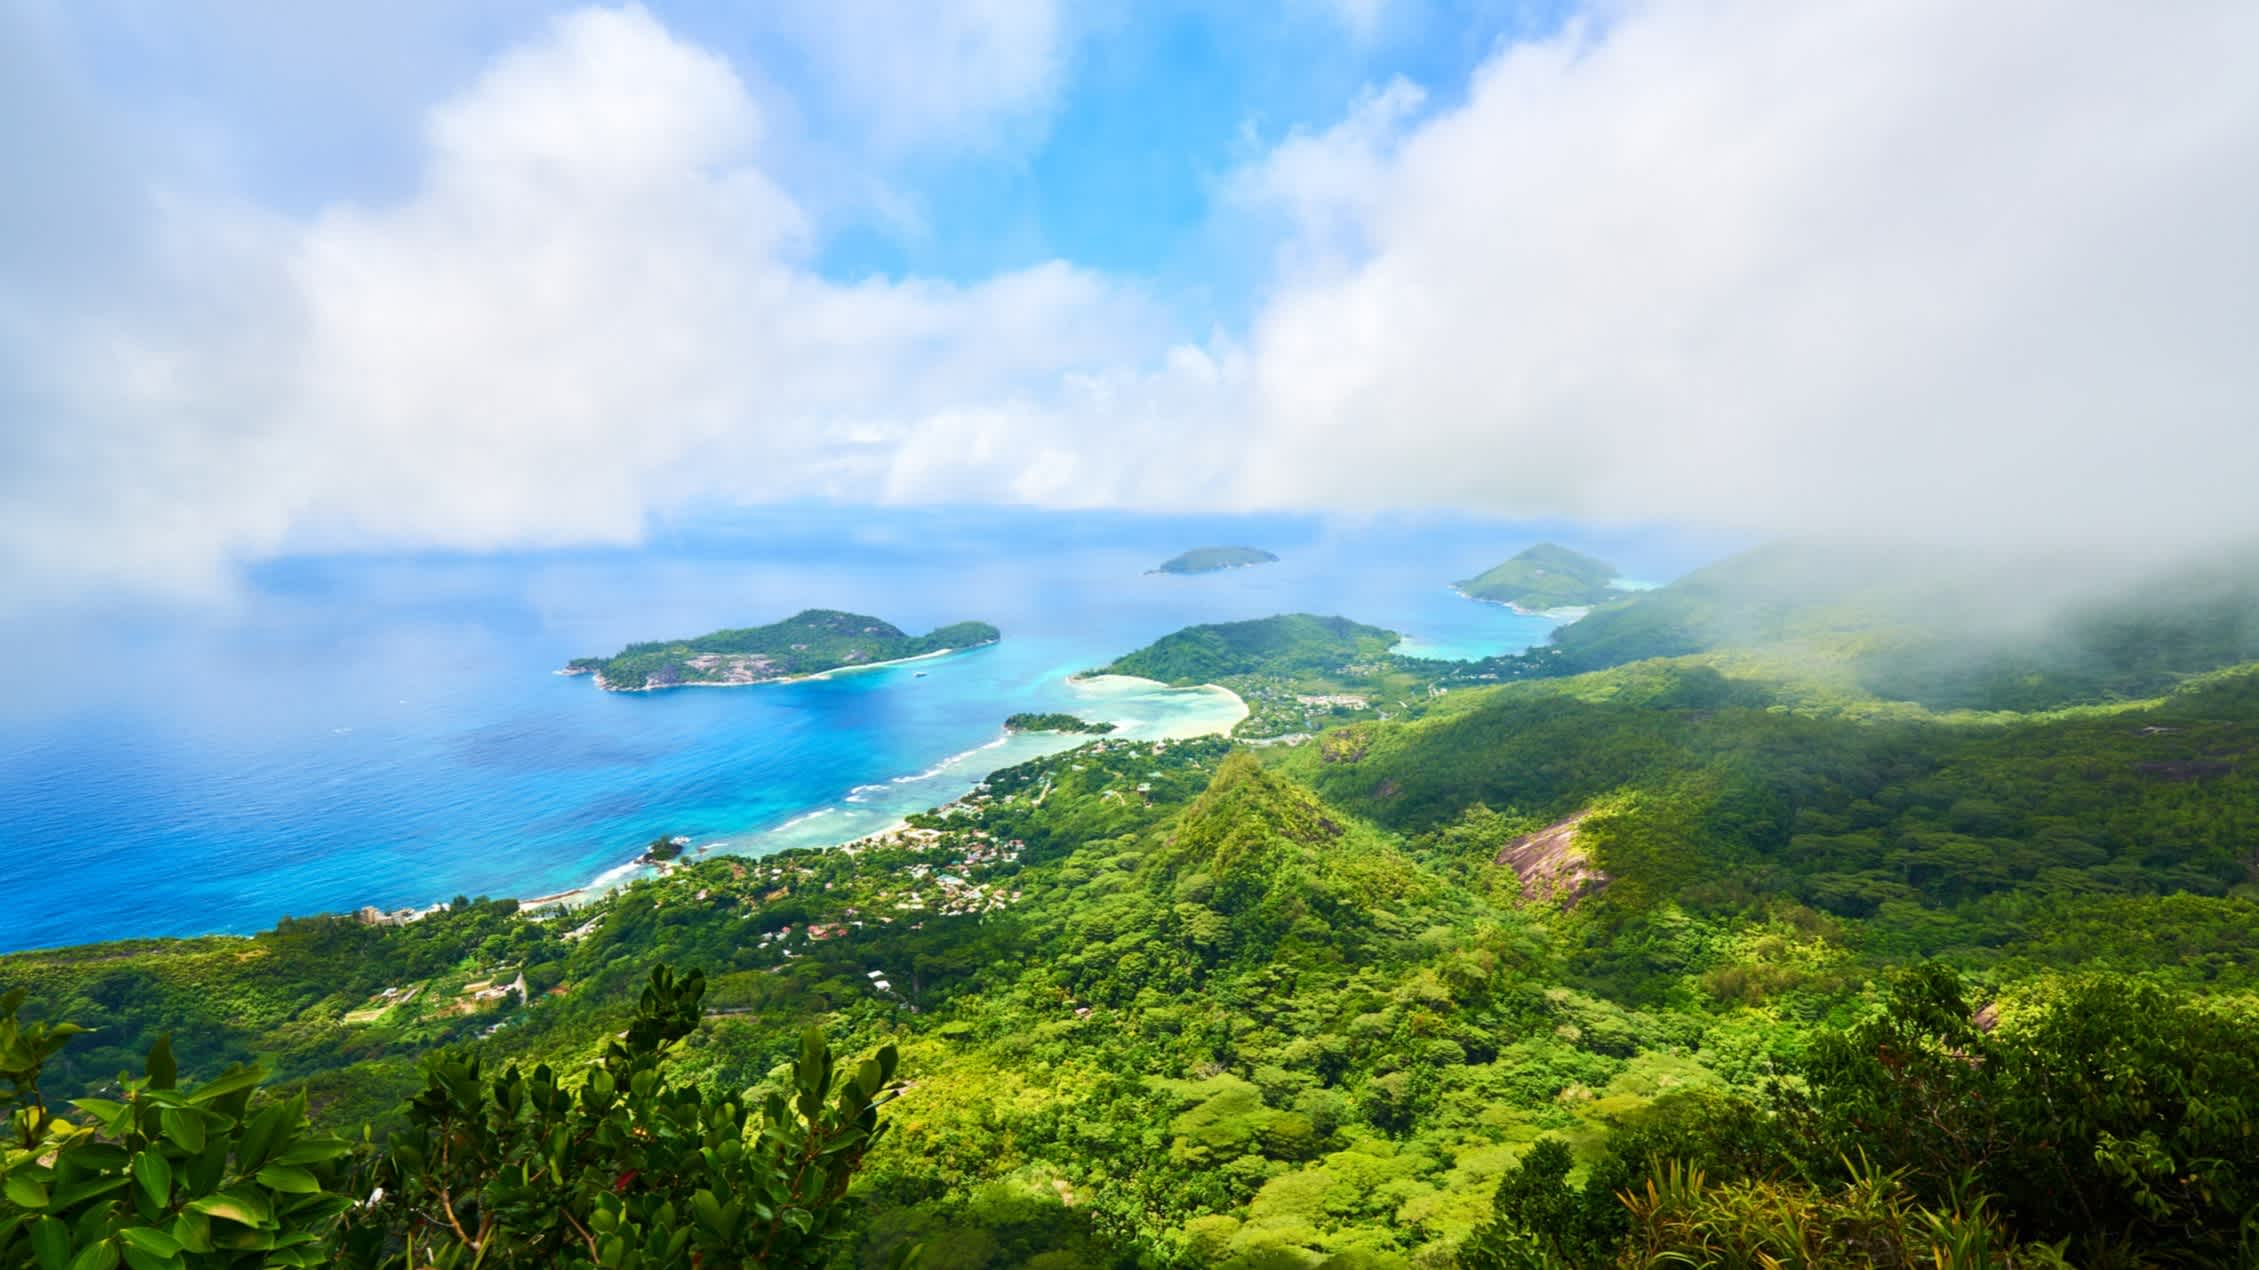 Panoramablick auf die Insel Therese, die Bucht Ternay und die kleine Insel der Seychellen vom Berg Morne Blanc aus auf Mahé, Seychellen